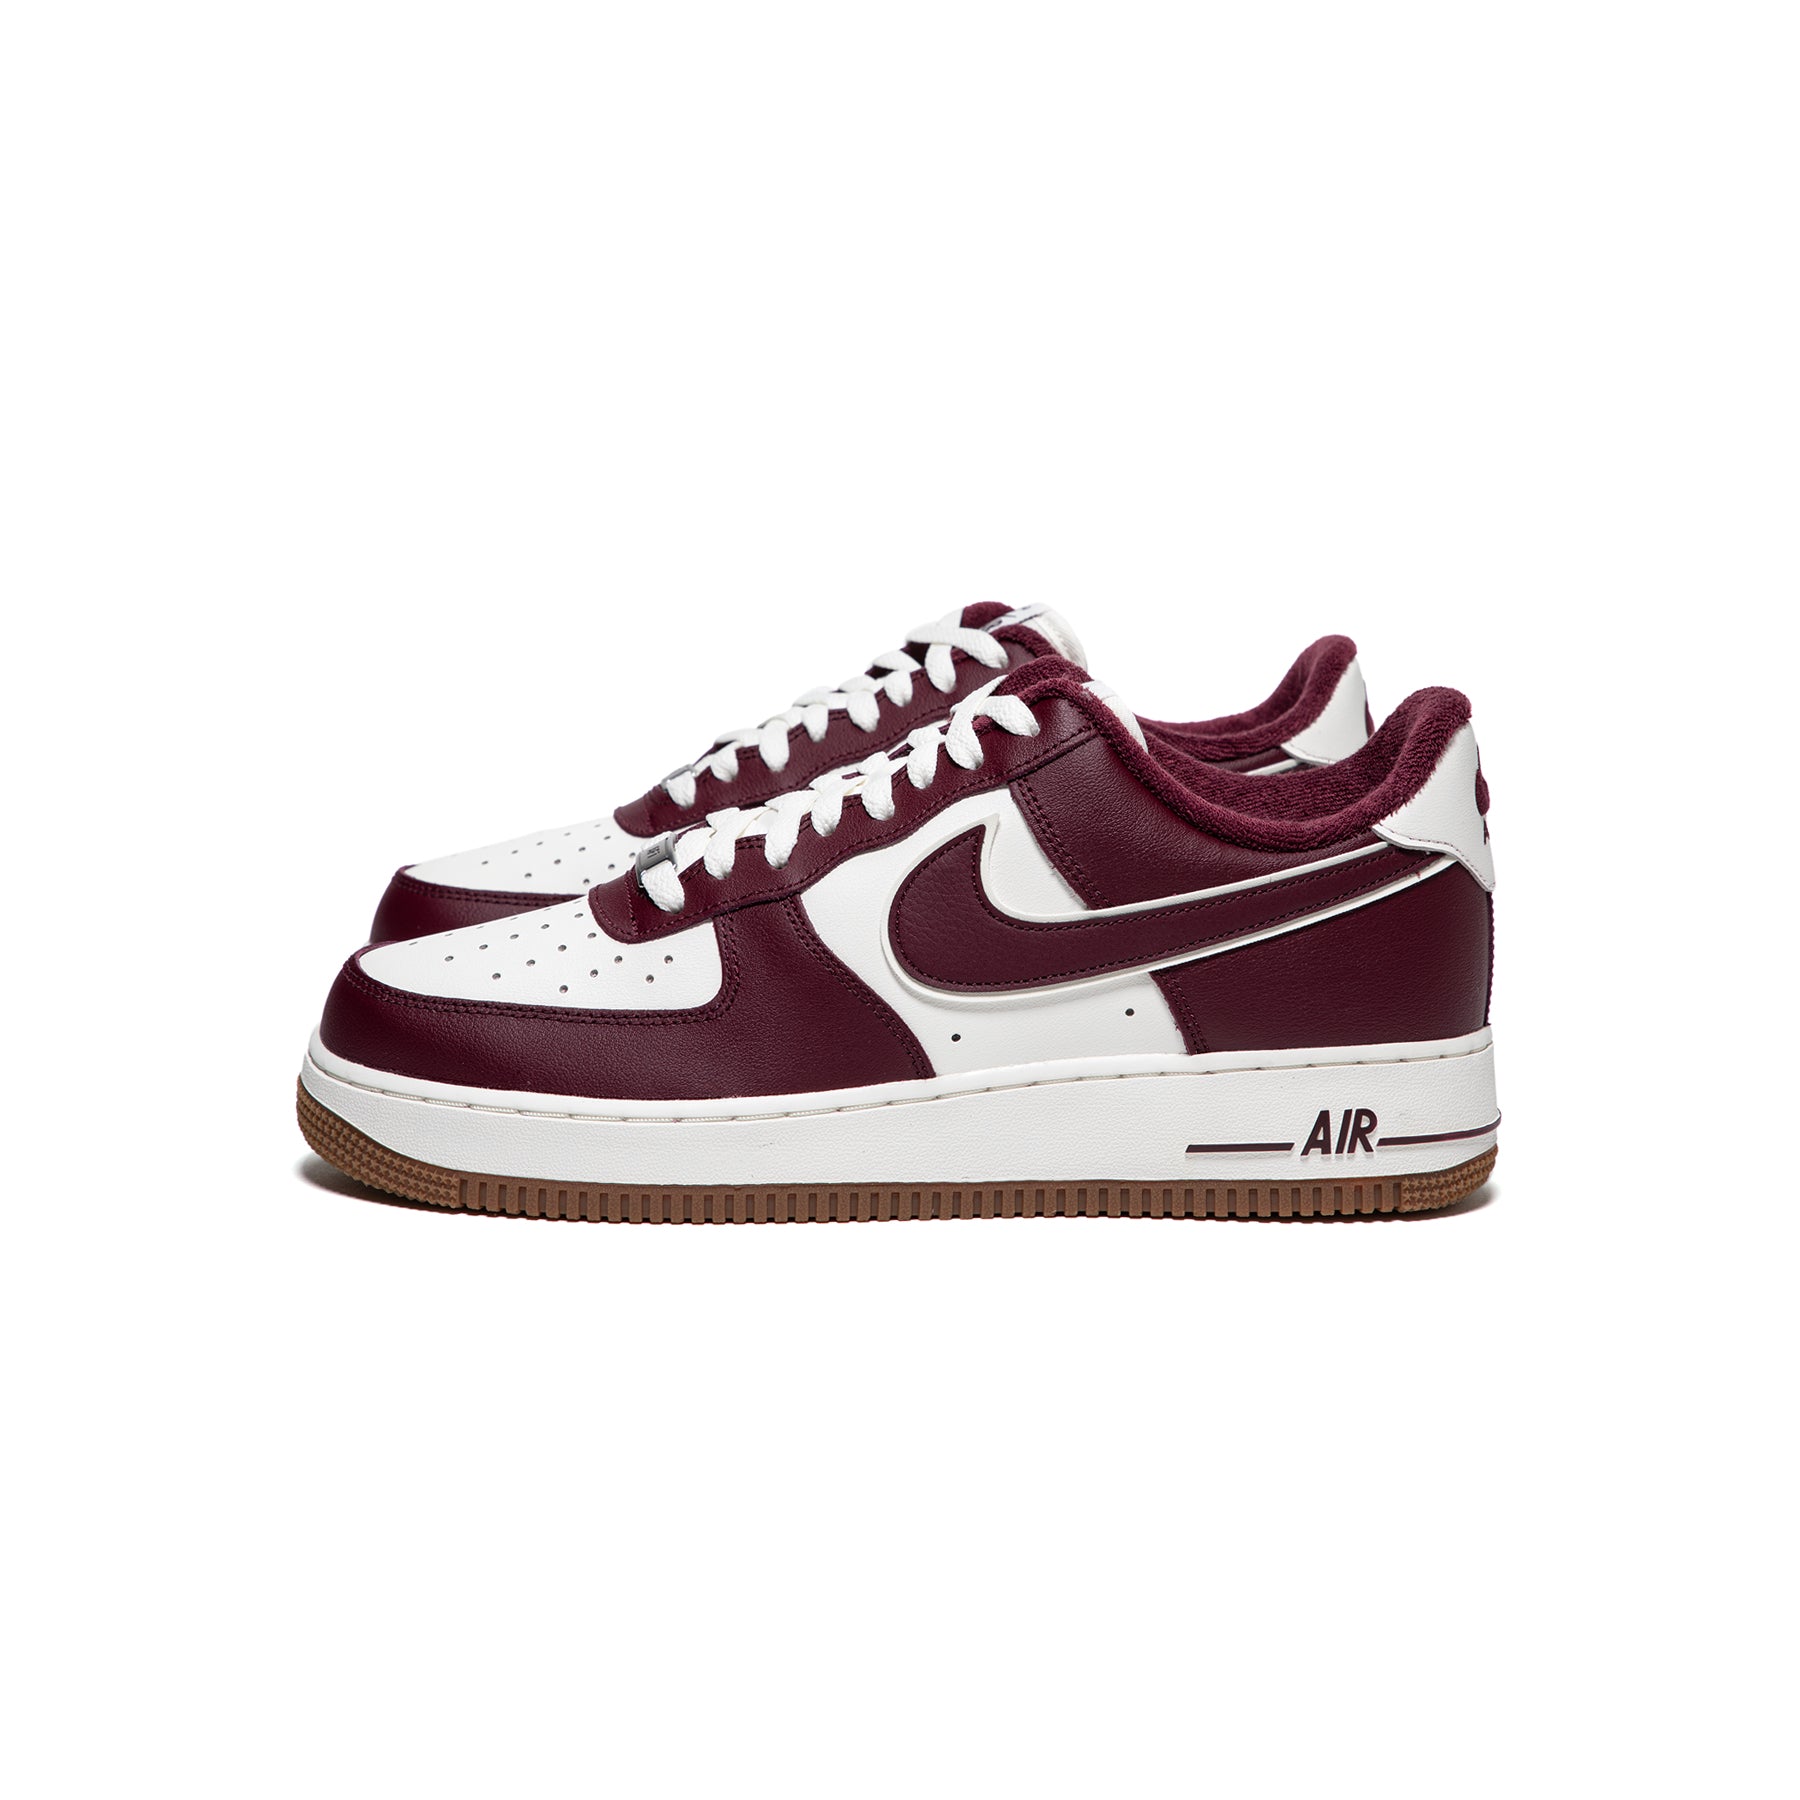 Nike Air Force 1 (Sail/Night Maroon/Gum Brown) – Concepts